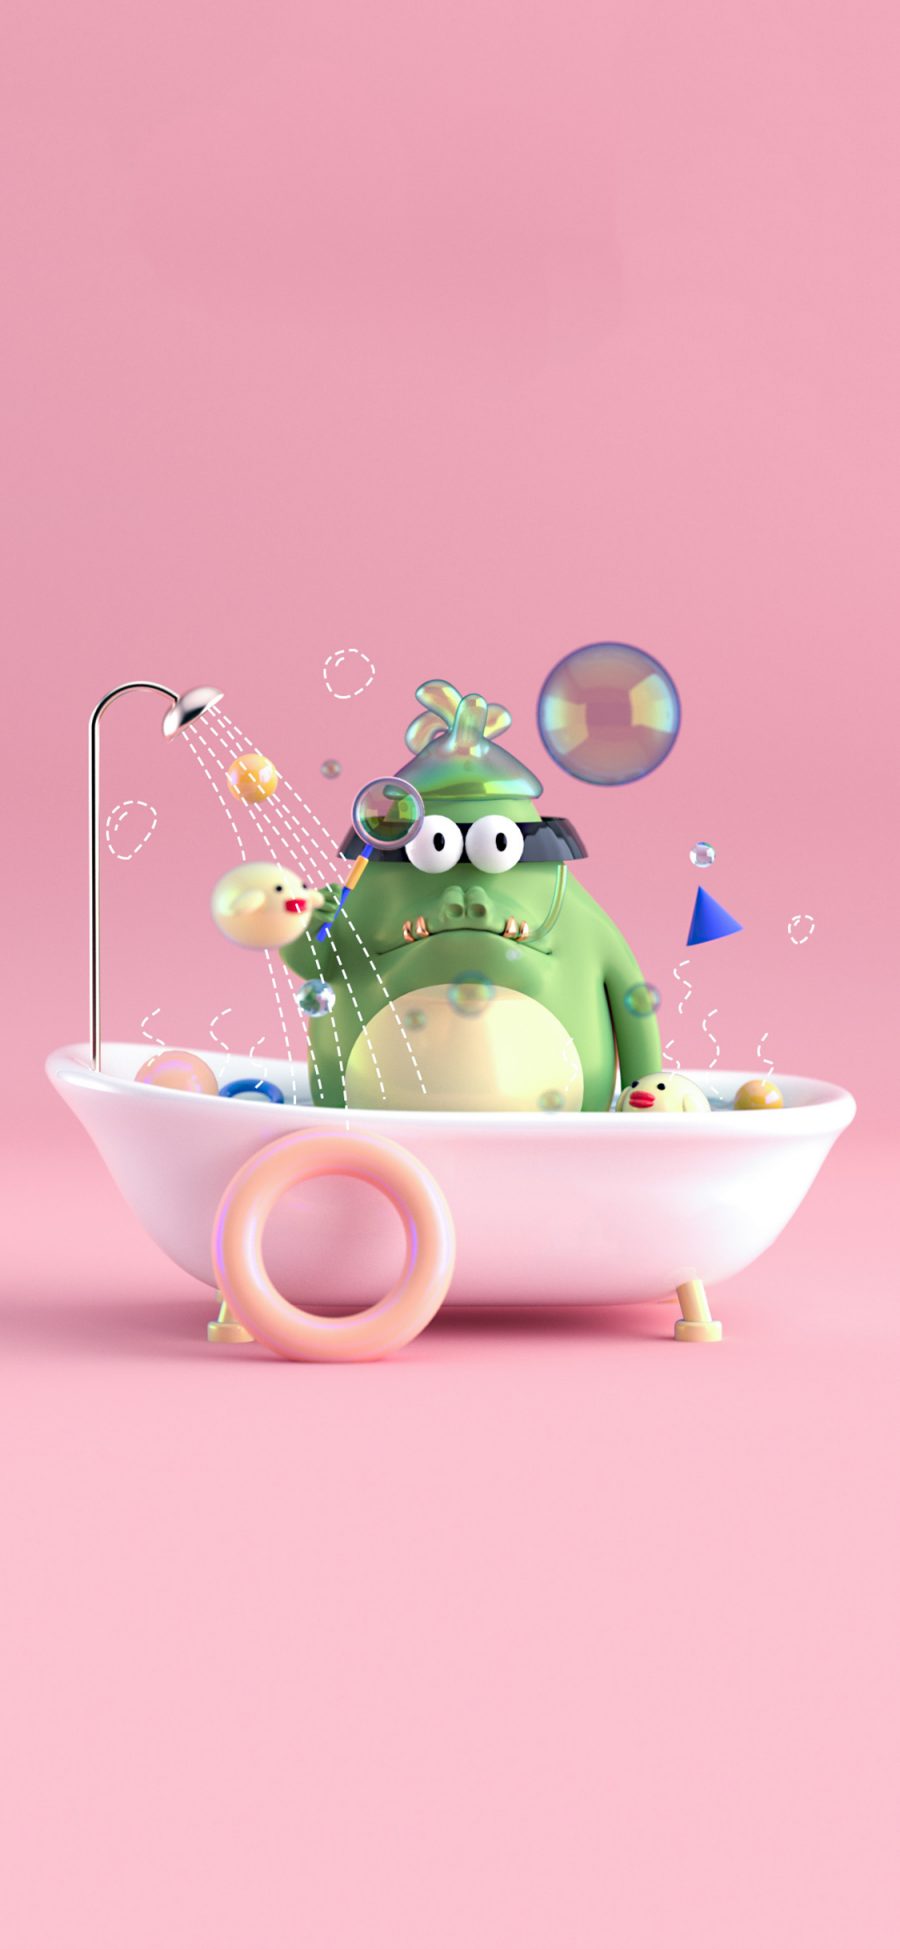 [2436×1125]3D 小鳄鱼 洗澡 可爱 苹果手机动漫壁纸图片